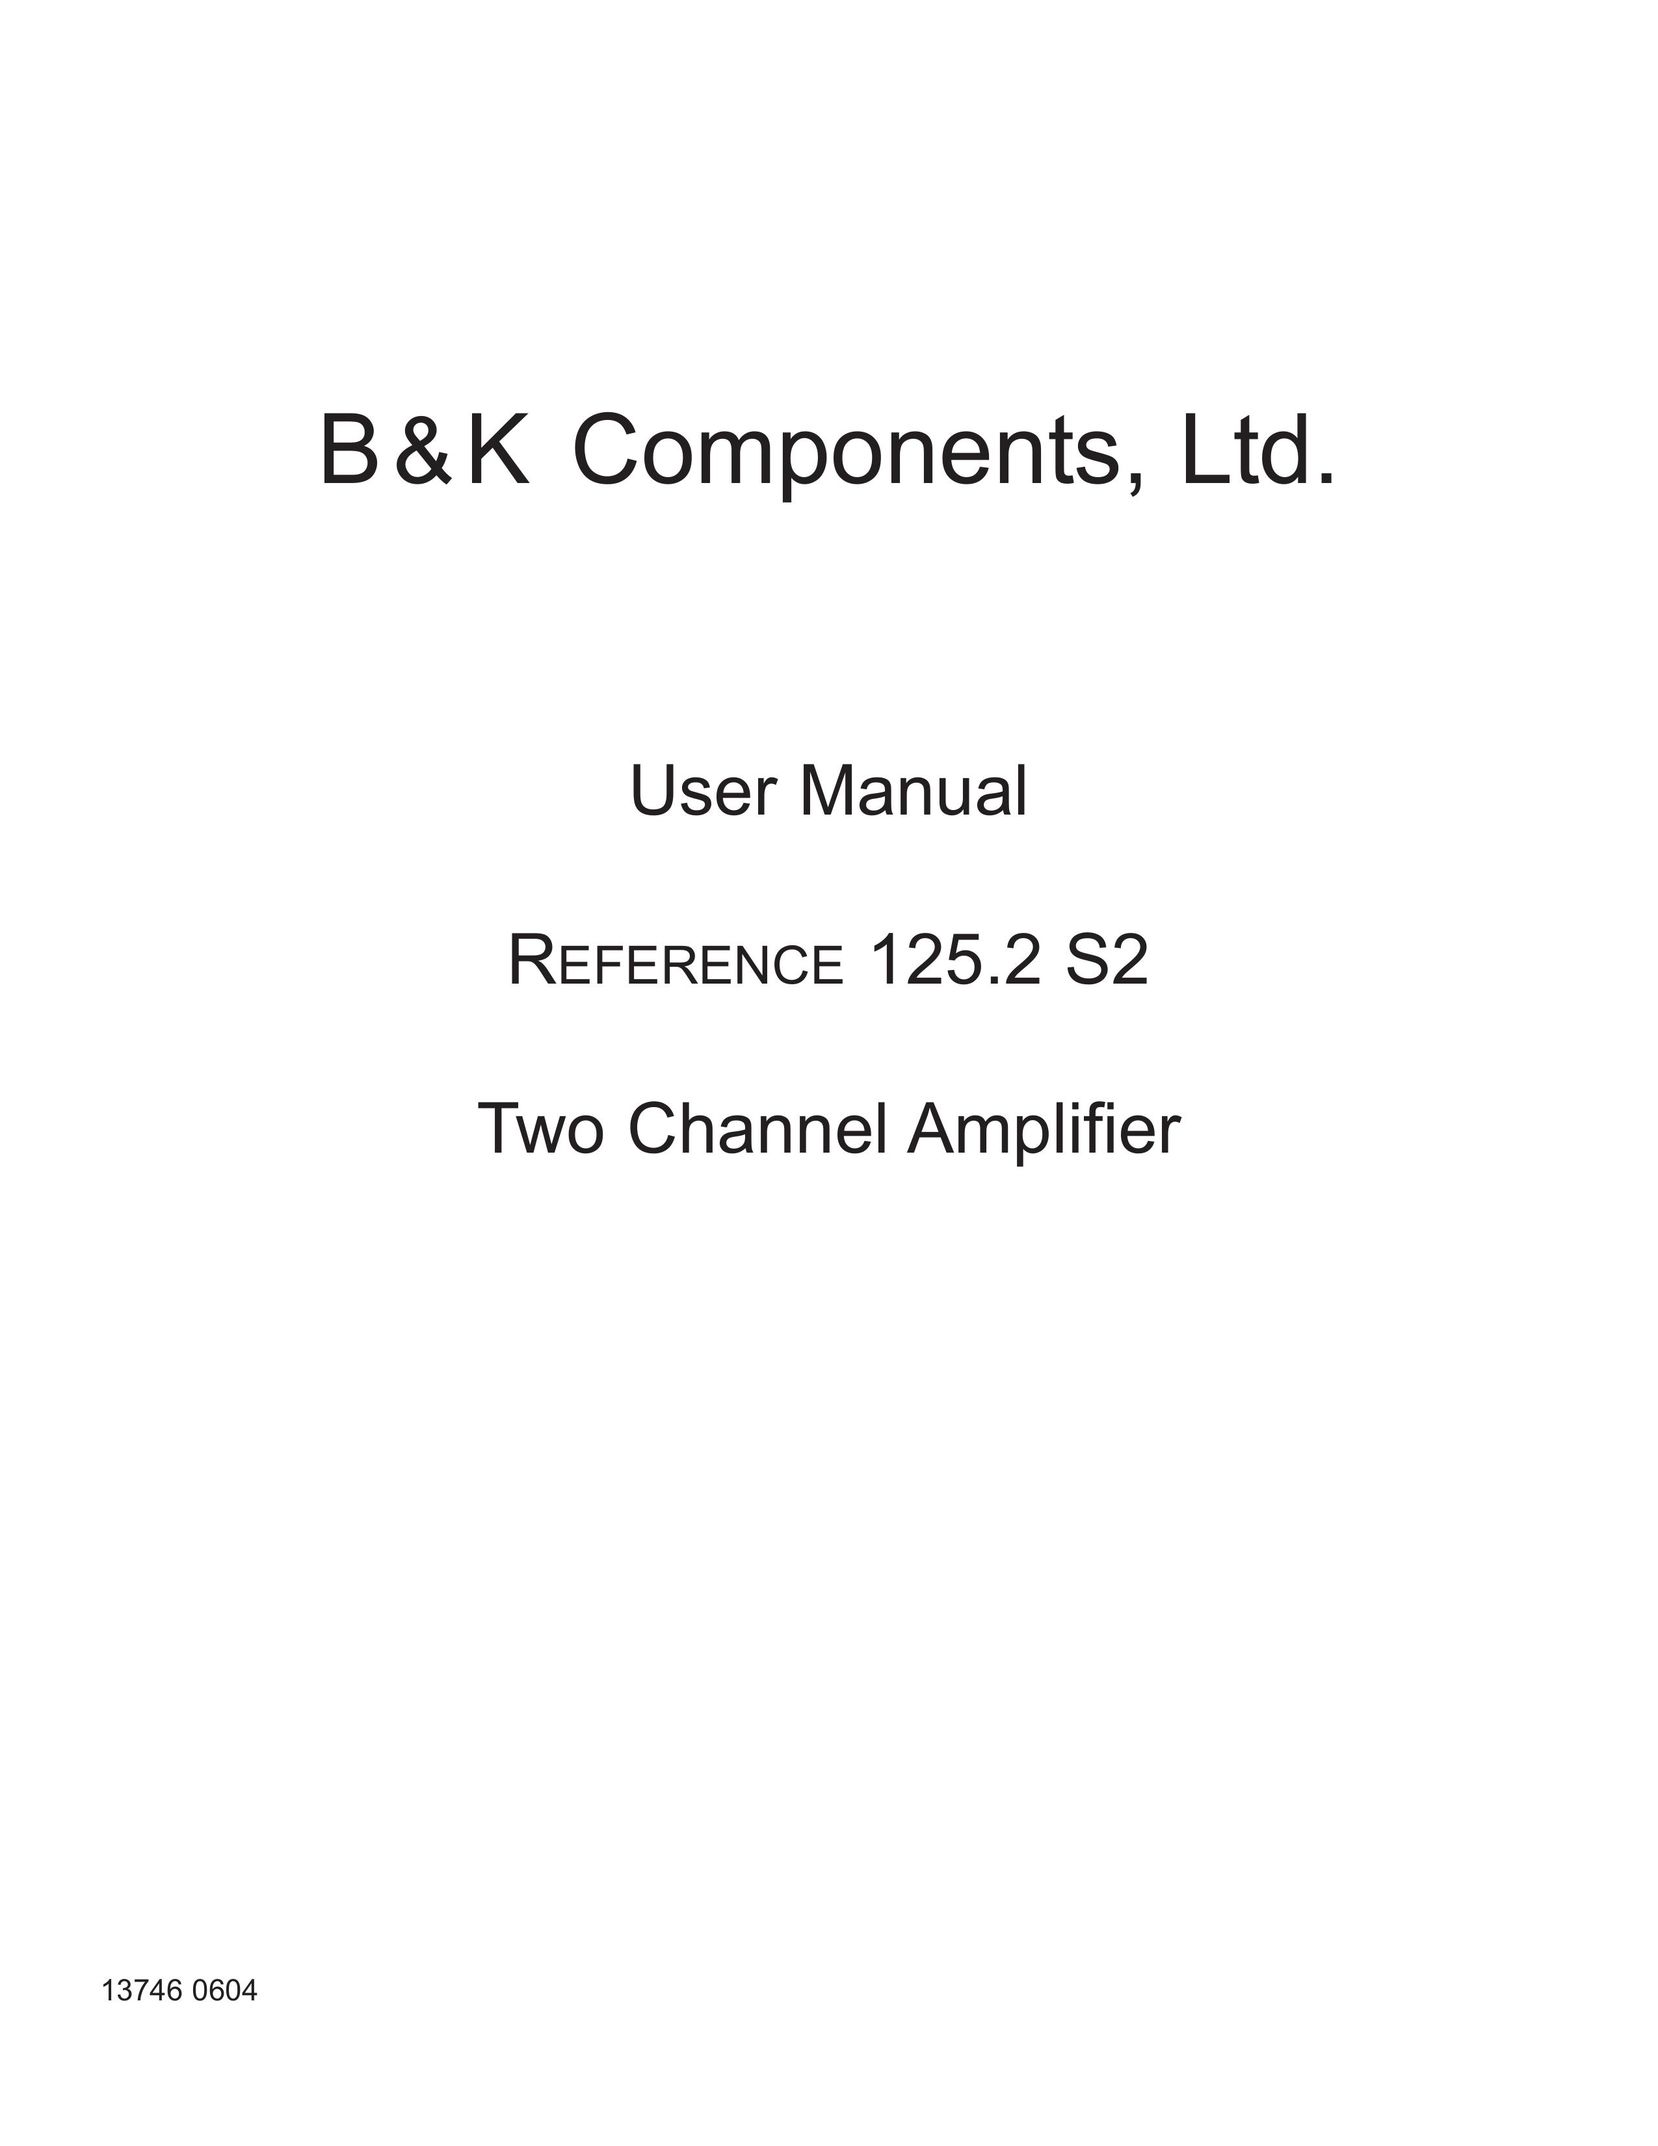 B&K 4420 Stereo Amplifier User Manual